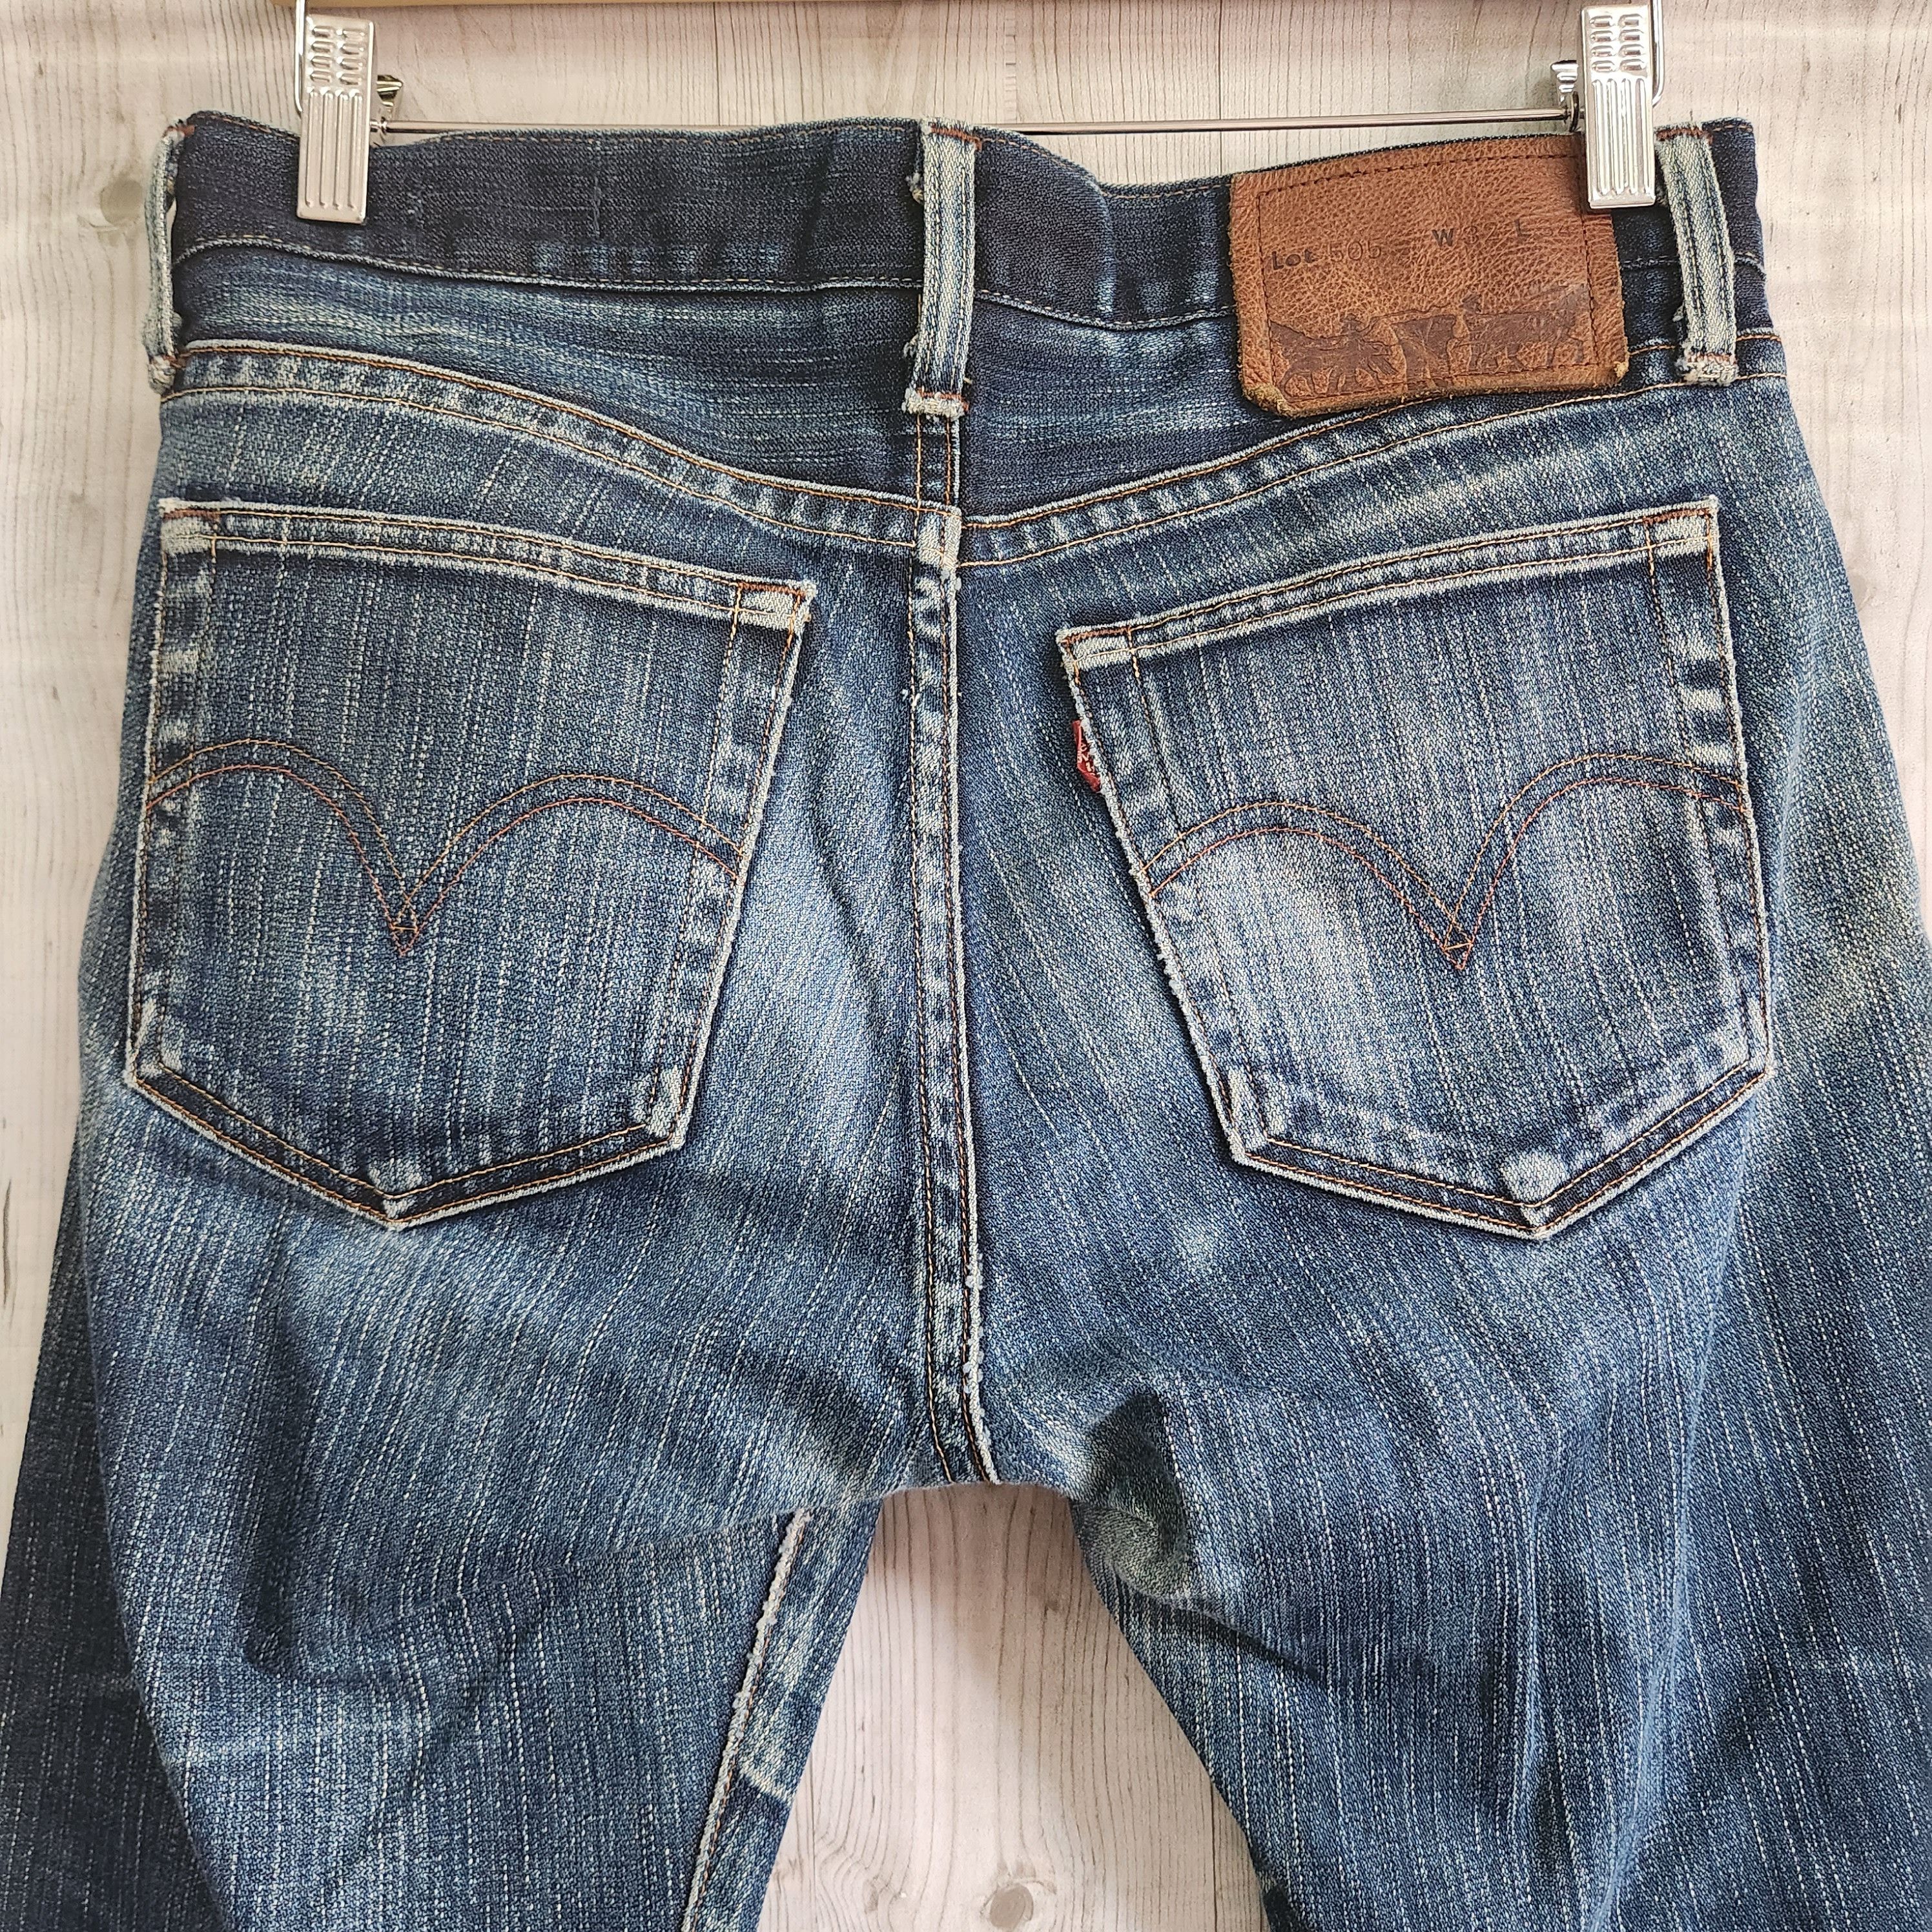 Levis 505 Premium Distressed Denim Jeans - 11